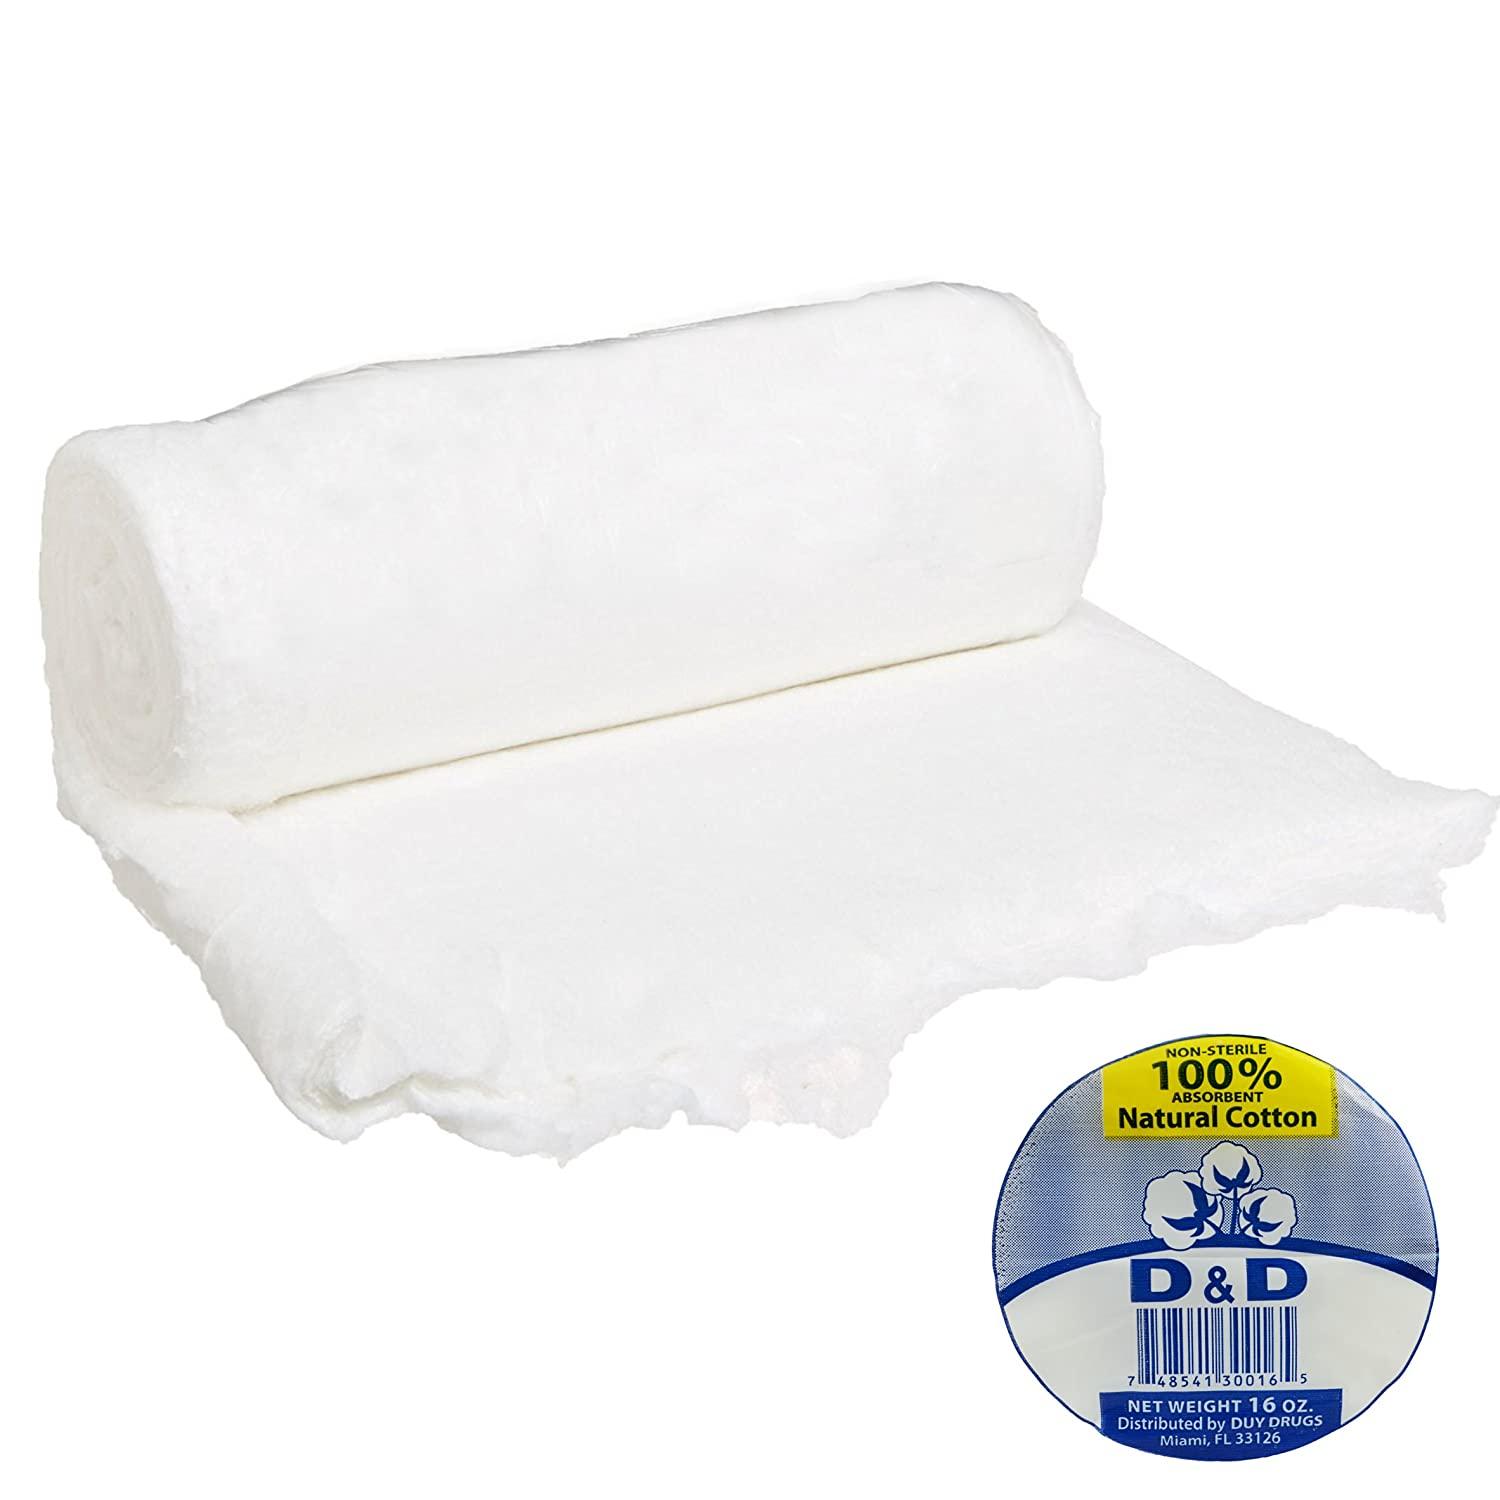 Cotton Roll 100% Absorbent Non-Sterile Natural Corrton 16oz